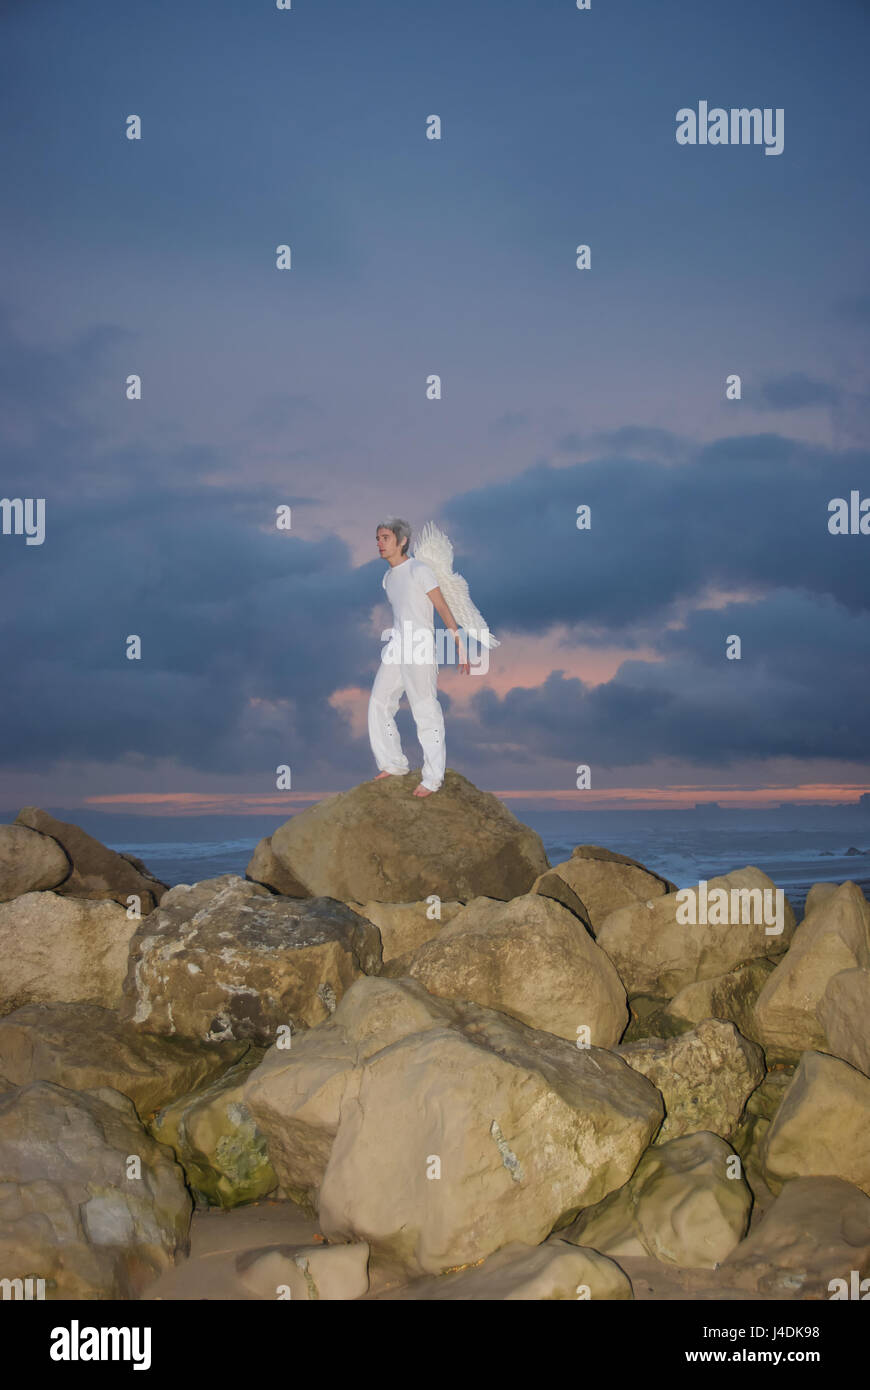 Jeune homme vêtu de blanc avec des ailes d'anges sur les rochers au bord de la mer en pleine tempête Banque D'Images